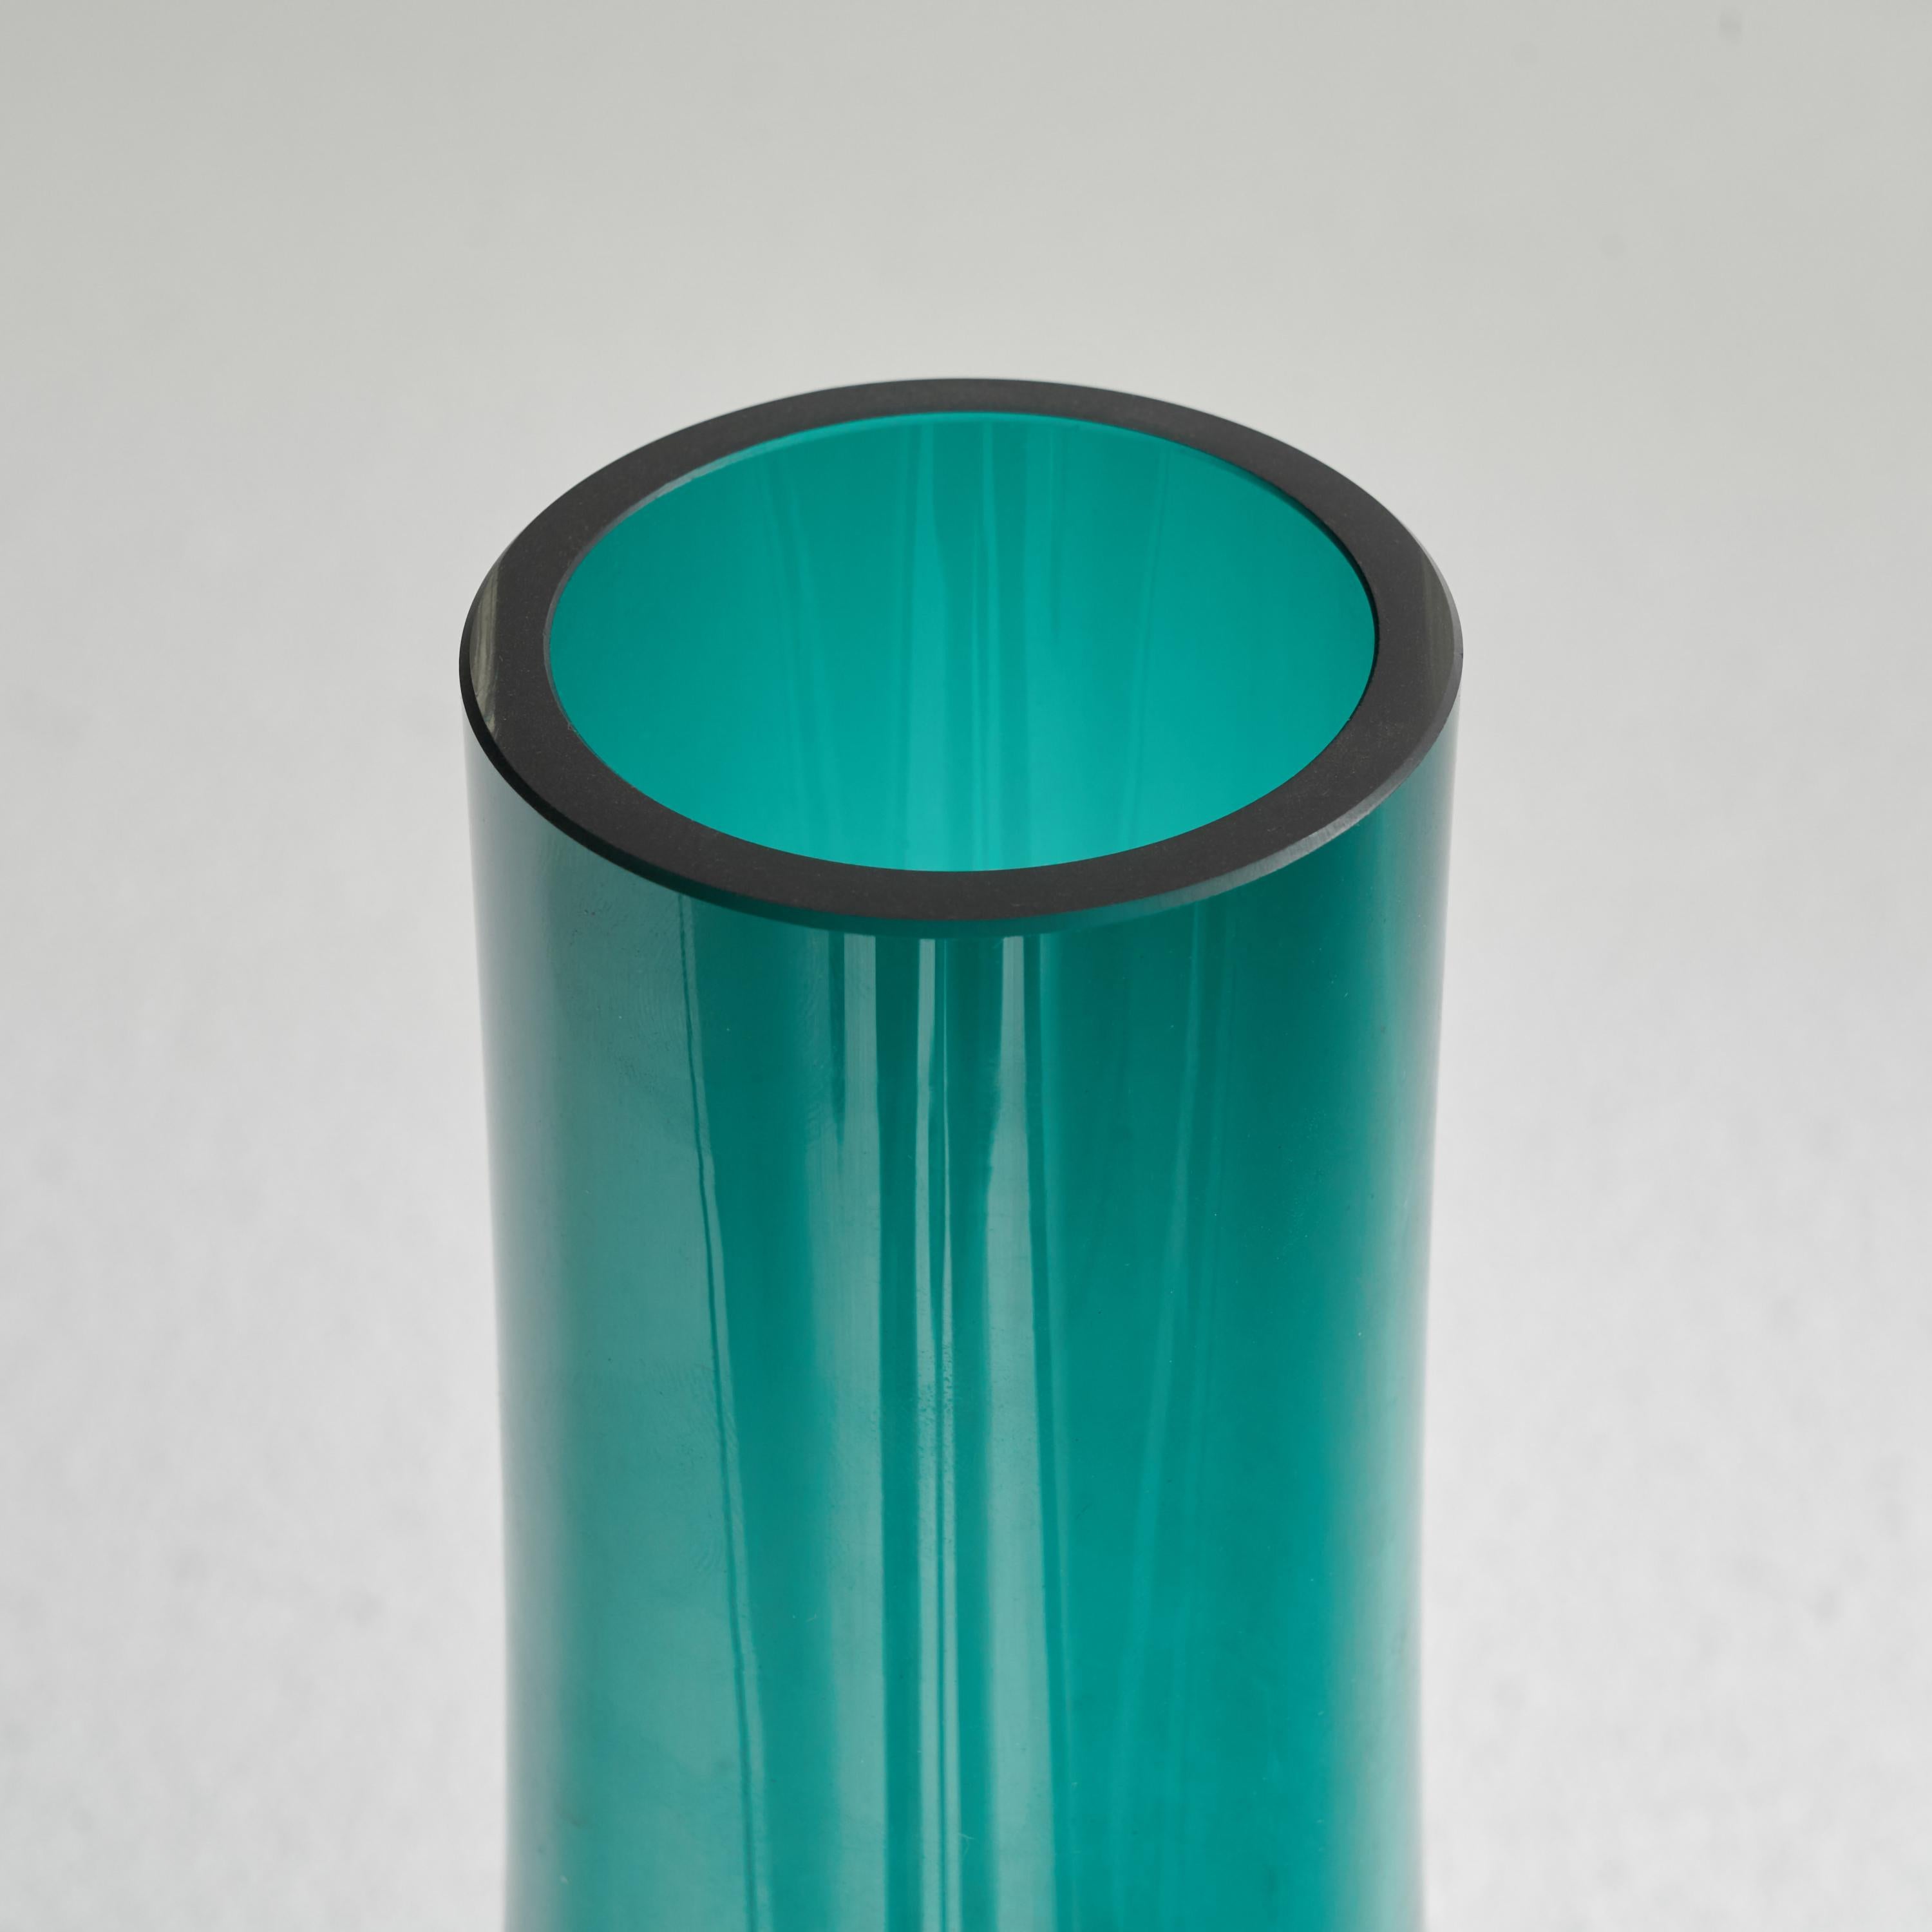 Grand vase en verre moderniste de Riihimäen Lasi Oy. Finlande, milieu du XXe siècle. 

Magnifique vase en verre d'art moderniste du milieu du siècle, originaire de Finlande. La couleur et la forme sont magnifiques, ce qui en fait une pièce d'art